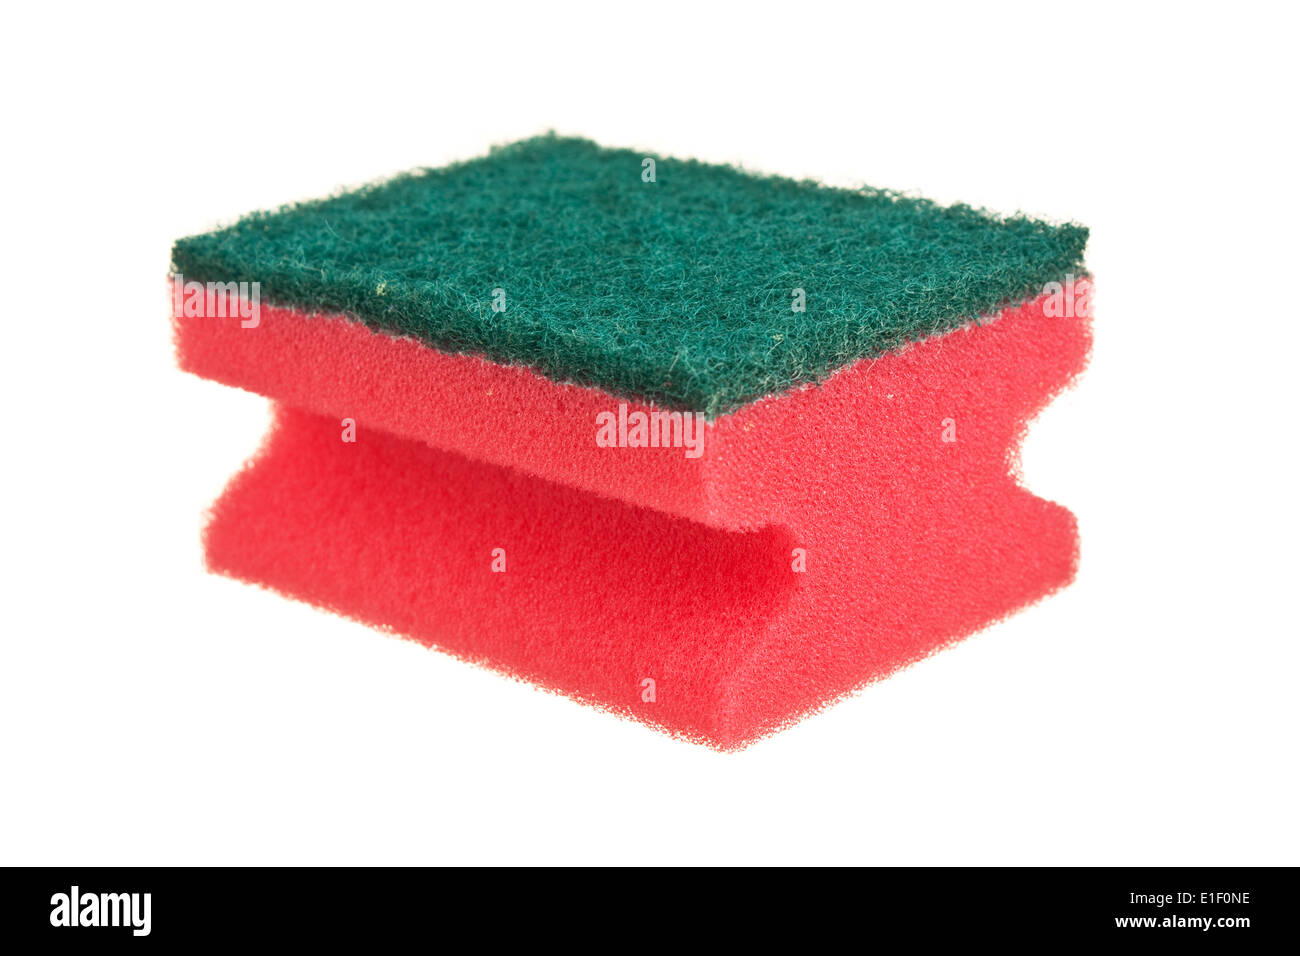 sponges isolated on white background Stock Photo